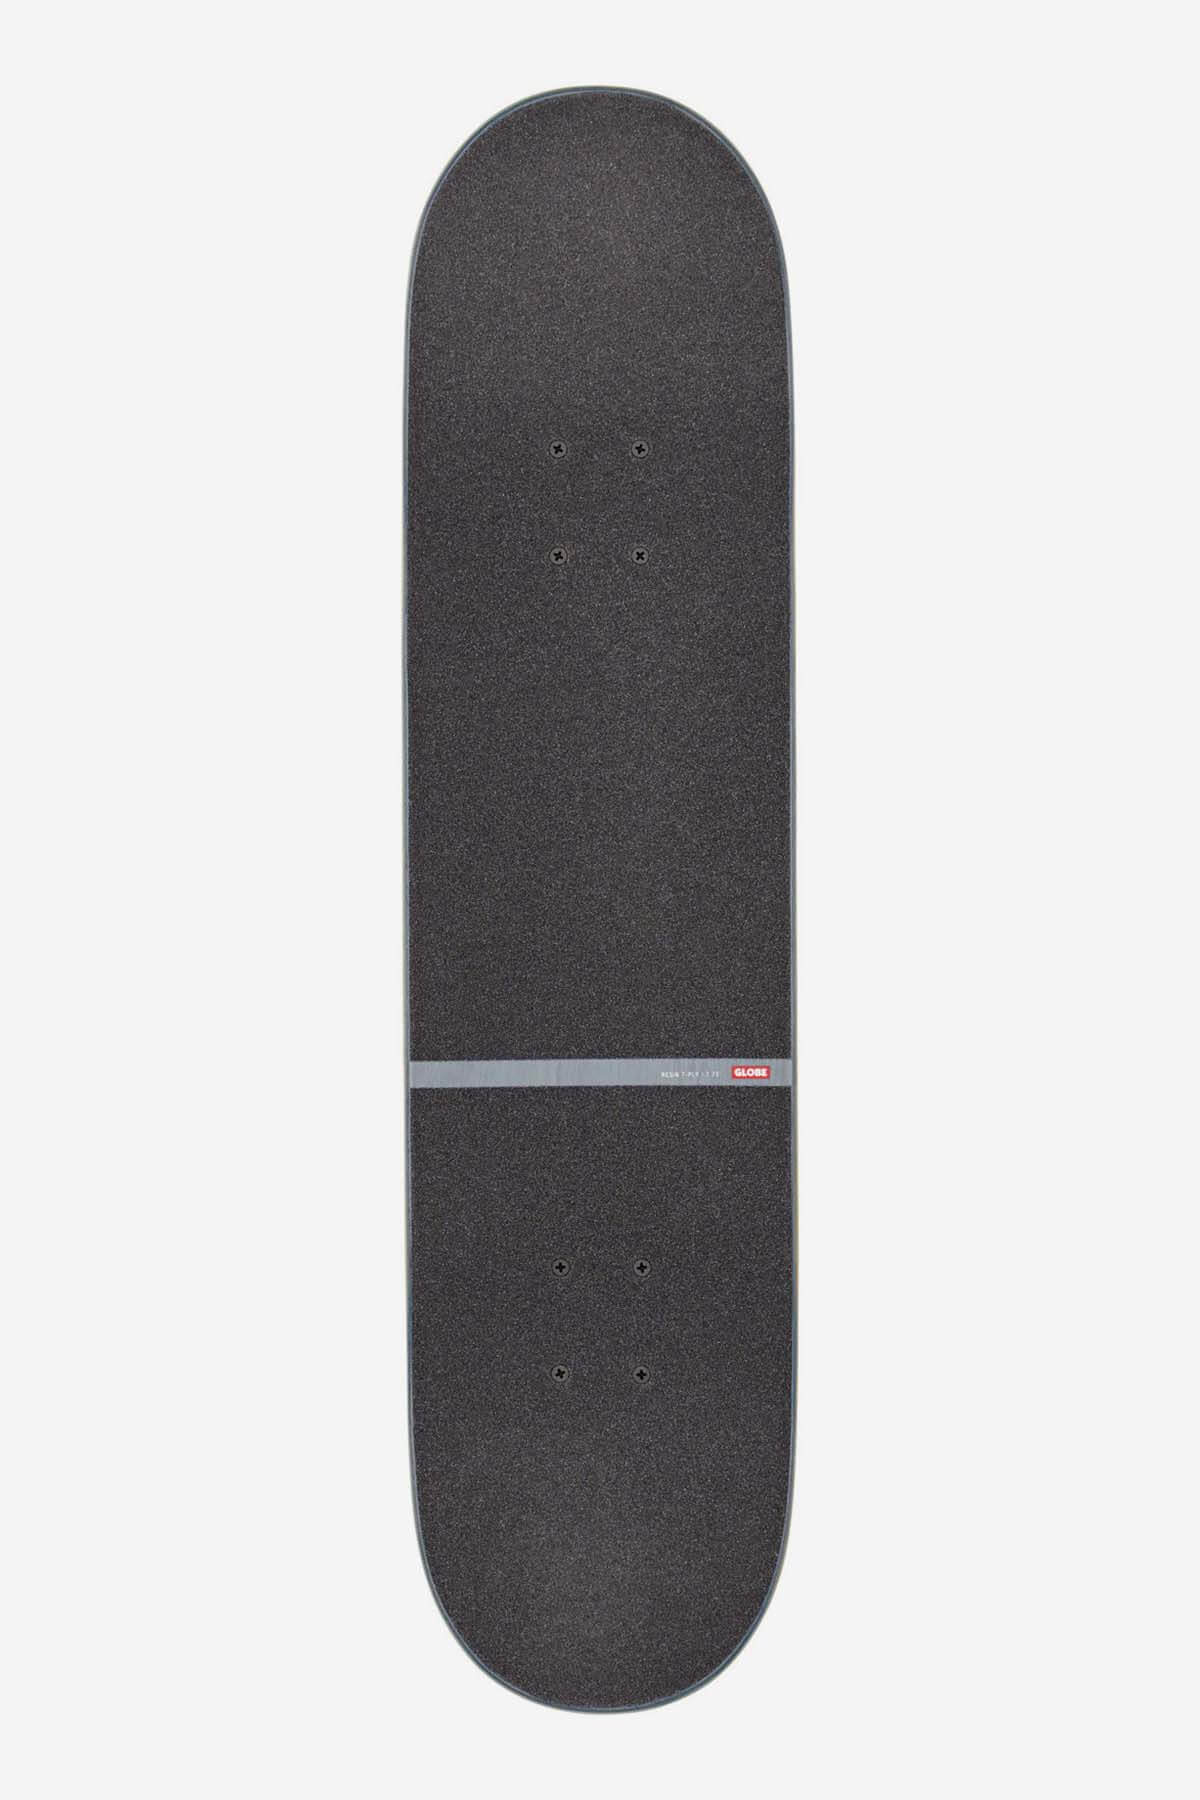 g1 d stack- blue orange 7.75" complete skateboard